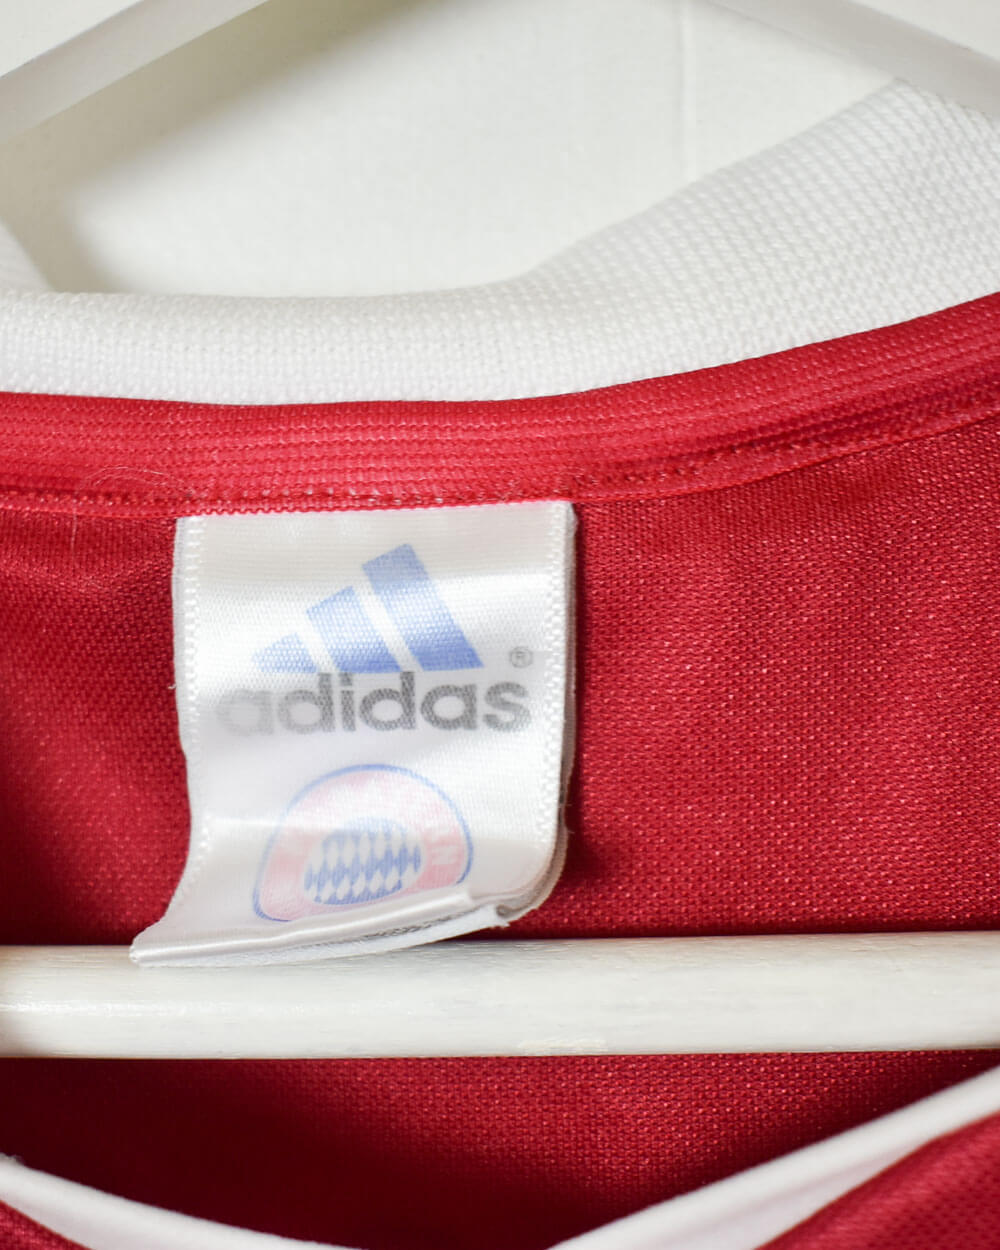 Red Adidas Bayern Munich 2003/04 Home Football Shirt - Small